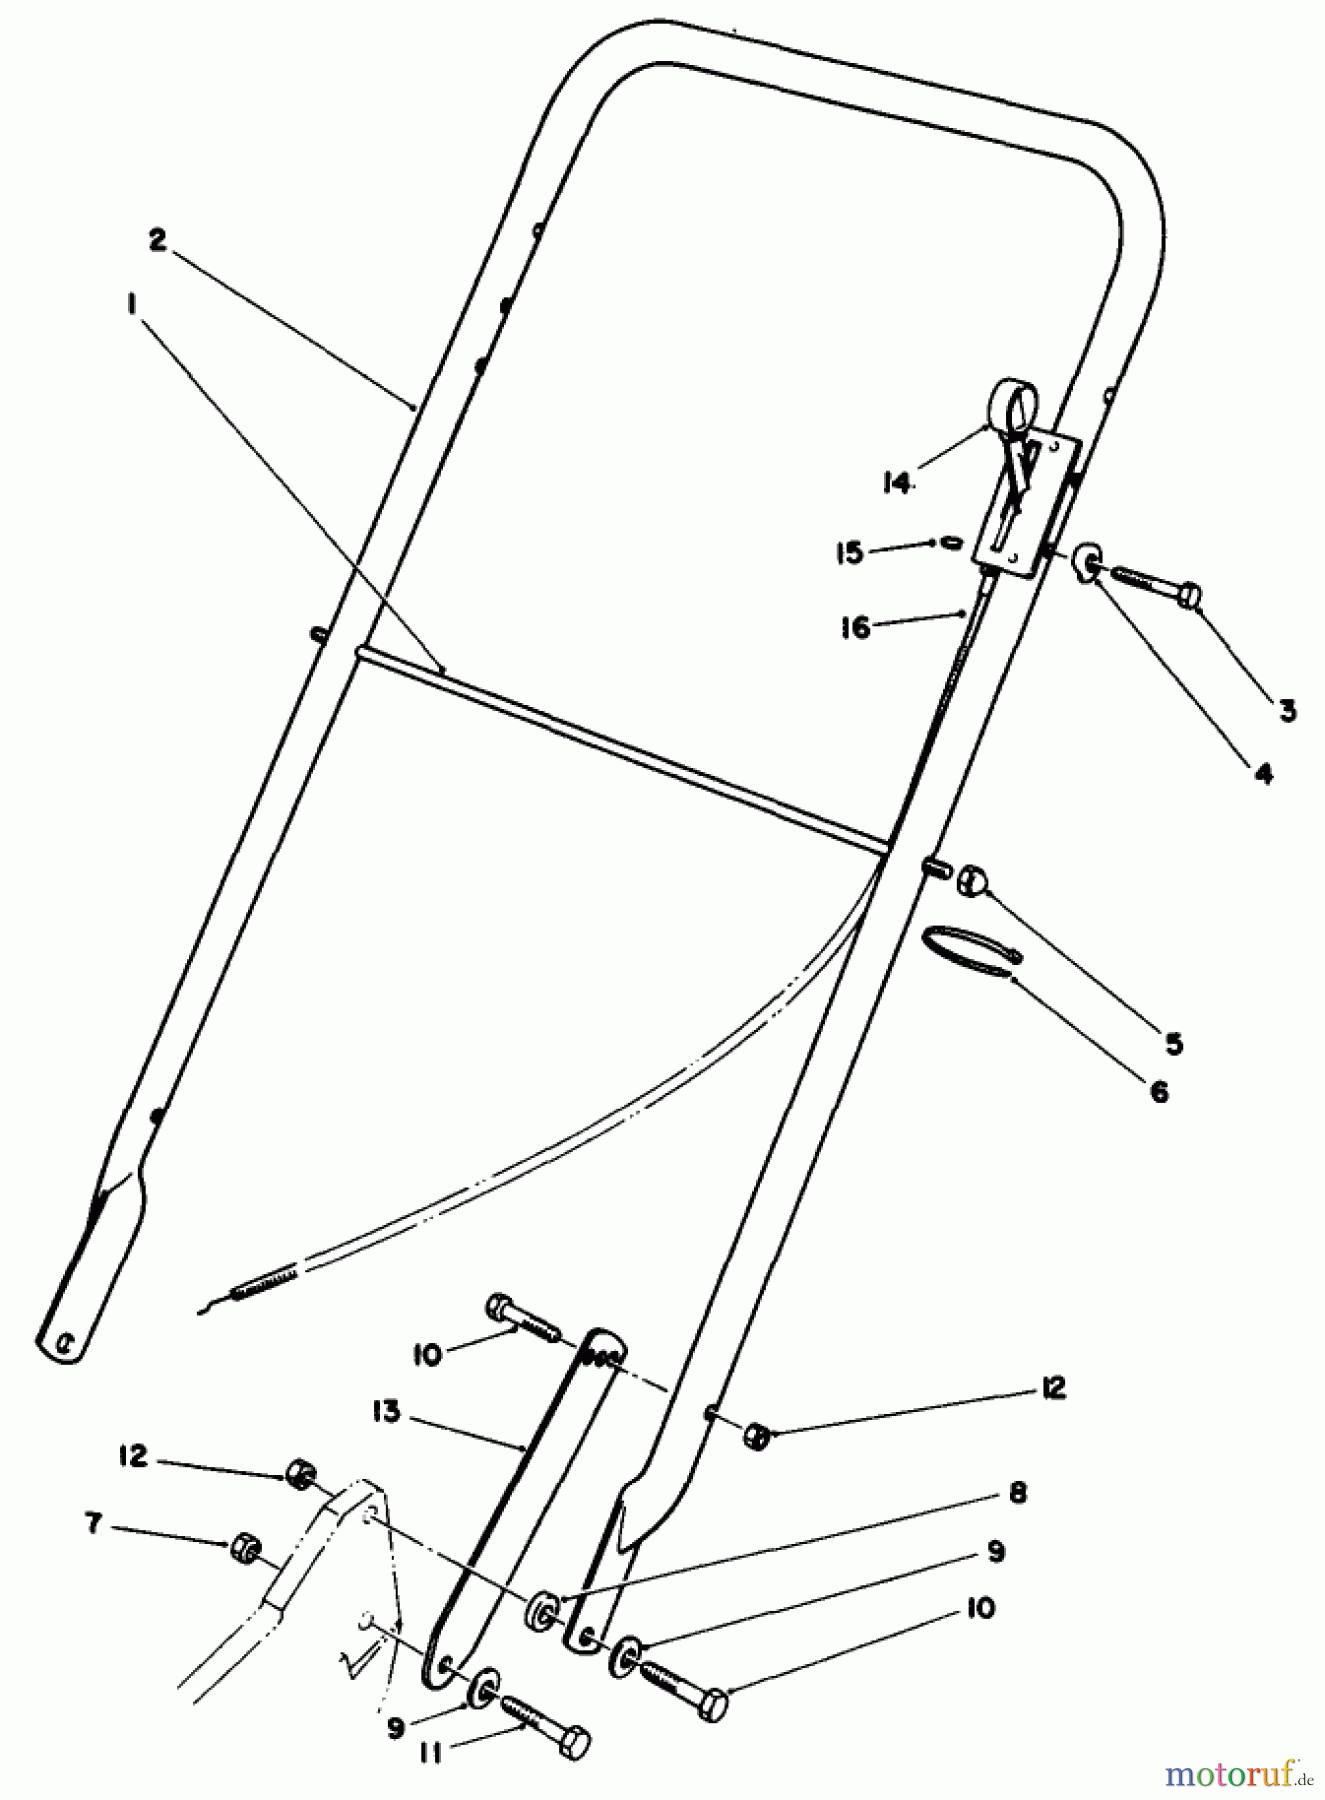  Toro Neu Mowers, Walk-Behind Seite 2 22035 - Toro Lawnmower, 1989 (9000001-9006453) HANDLE ASSEMBLY (MODEL 22030)